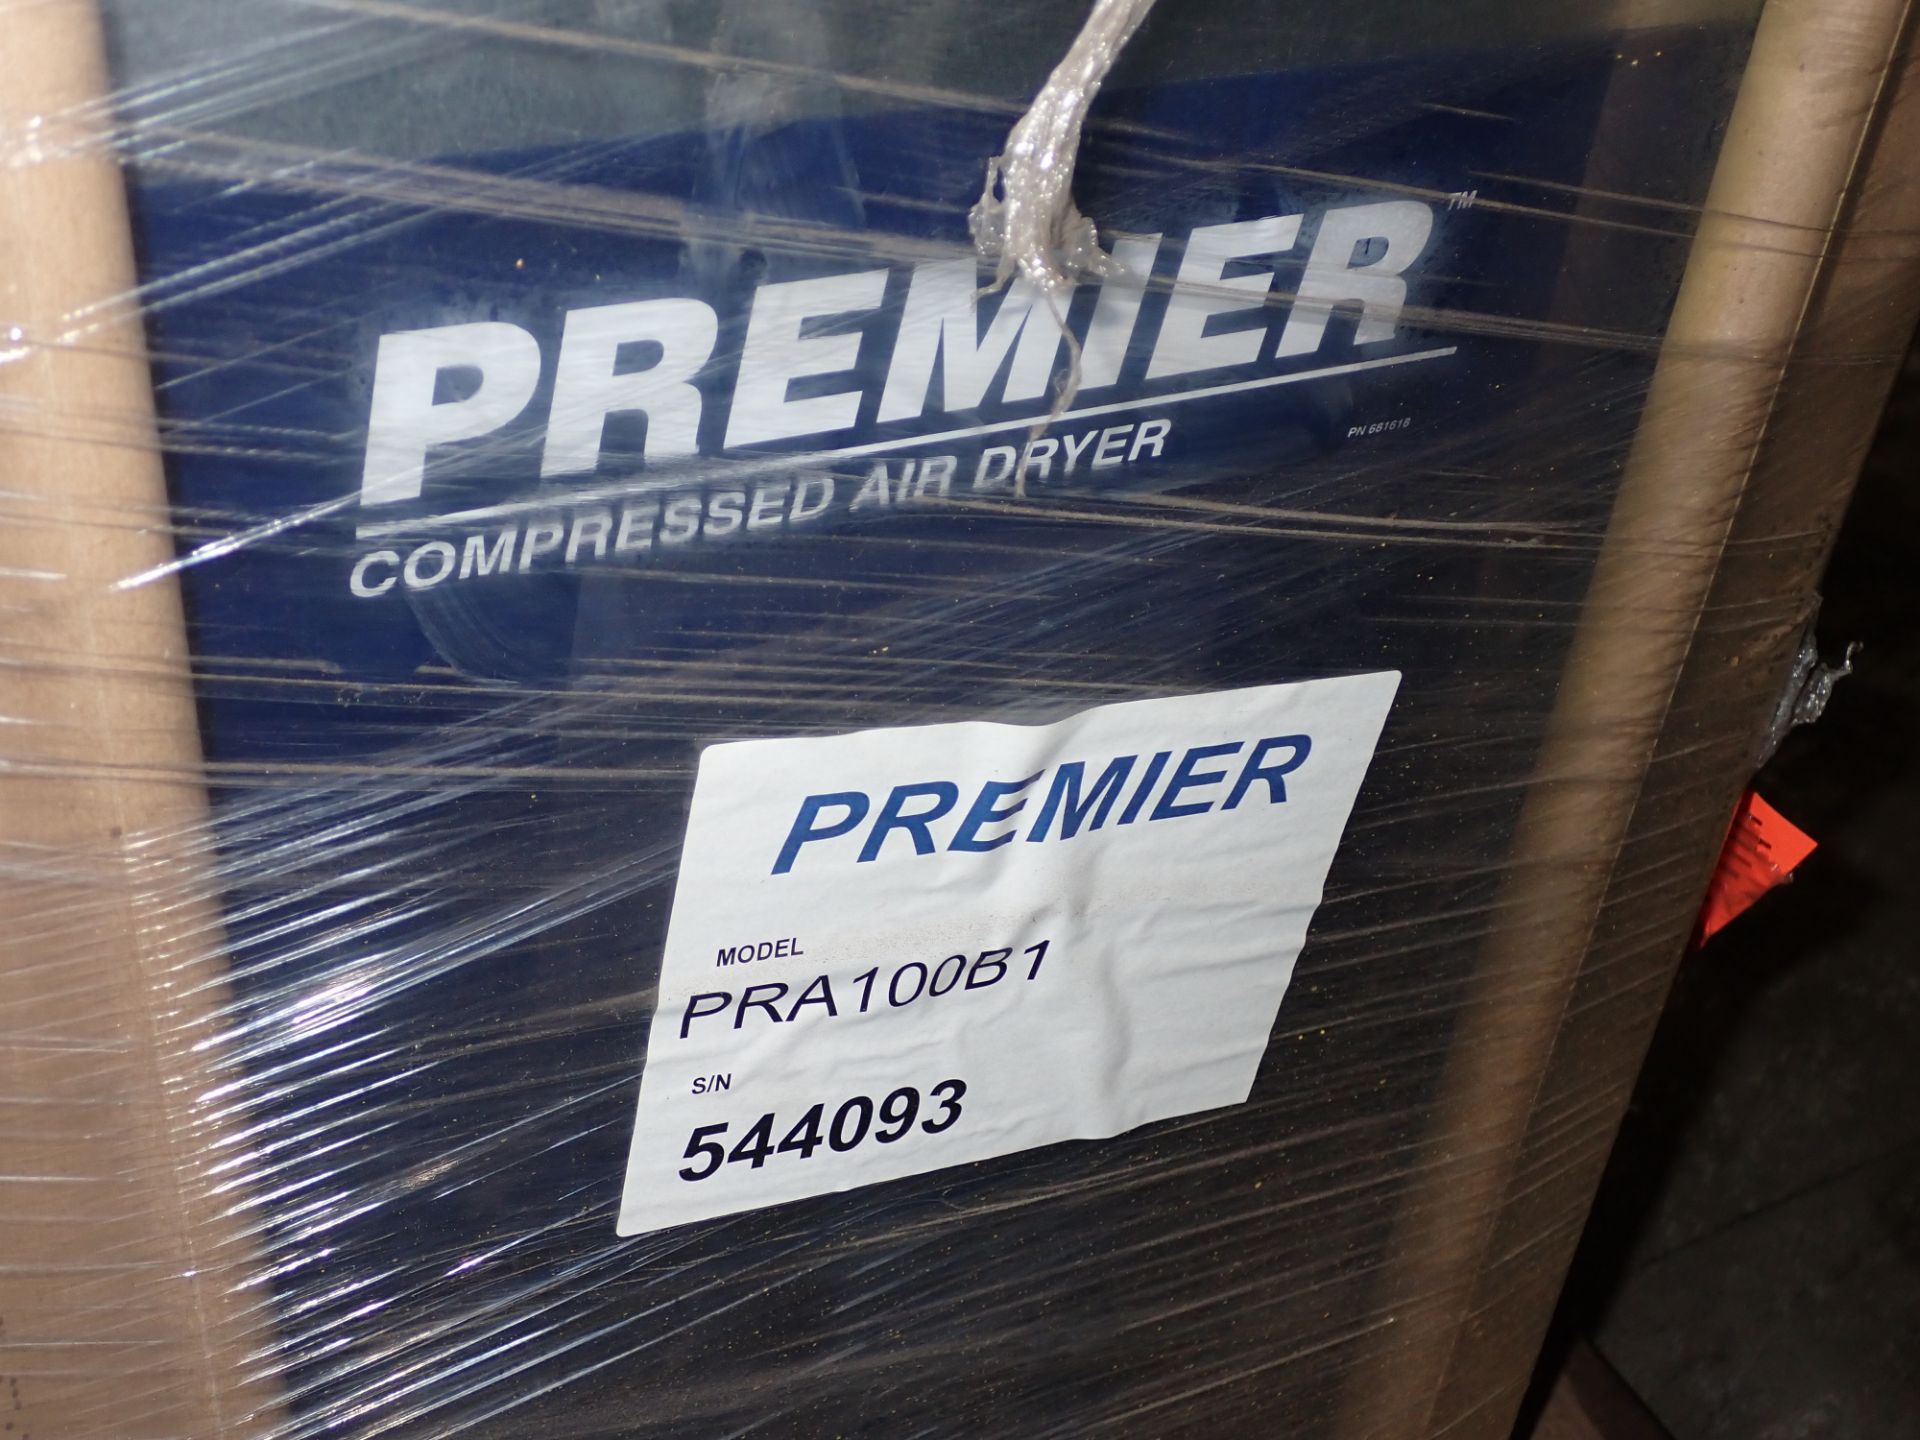 Premier Compressed Air Dryer #PRA100B1 - Image 4 of 6